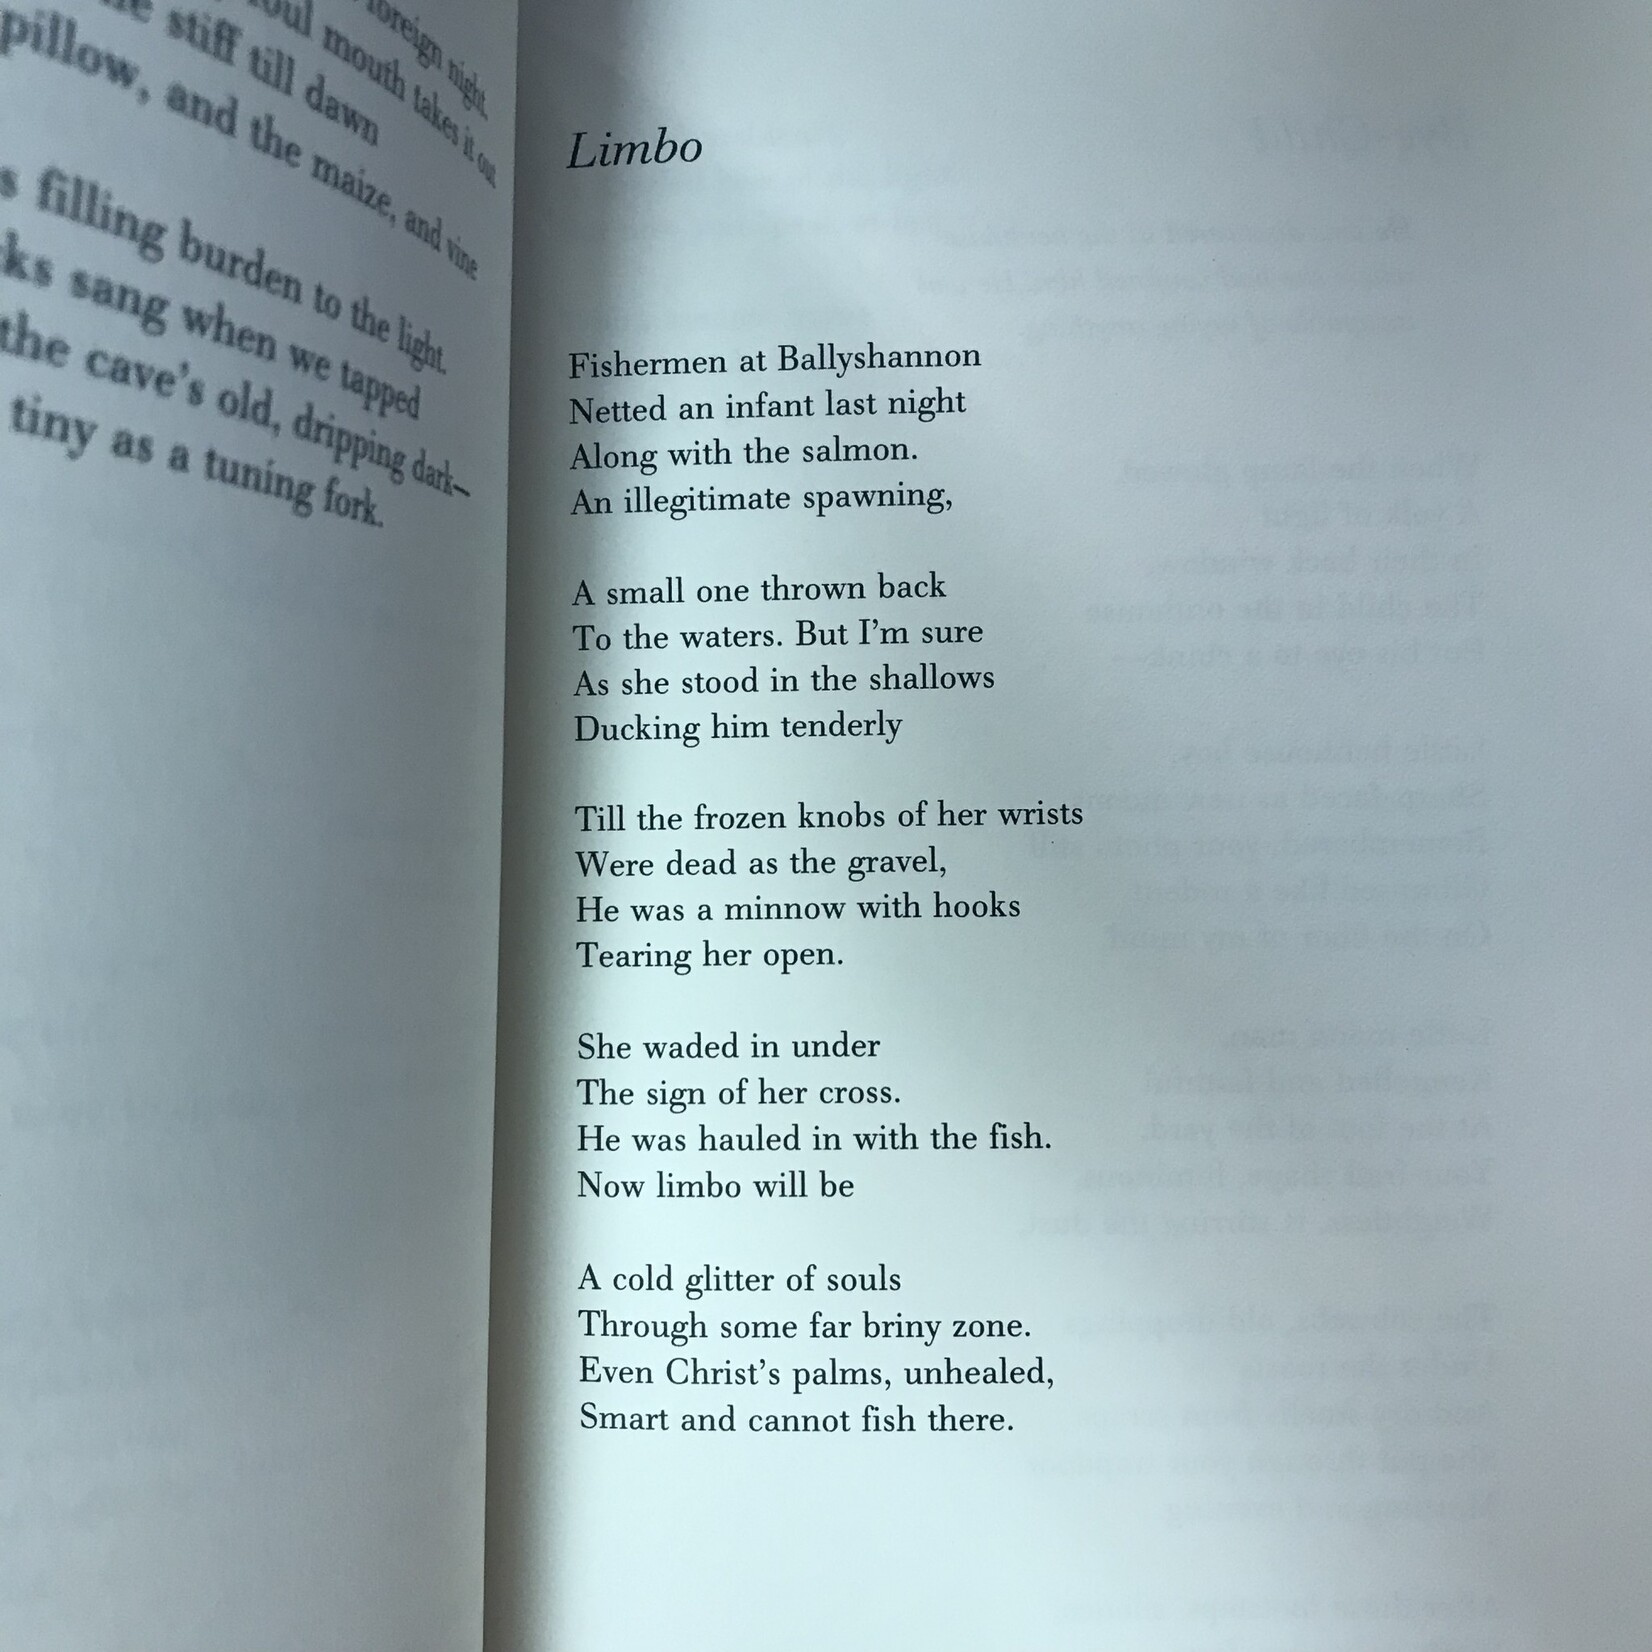 Seamus Heaney - Selected Poems 1966-1987 - Hardback (USED)